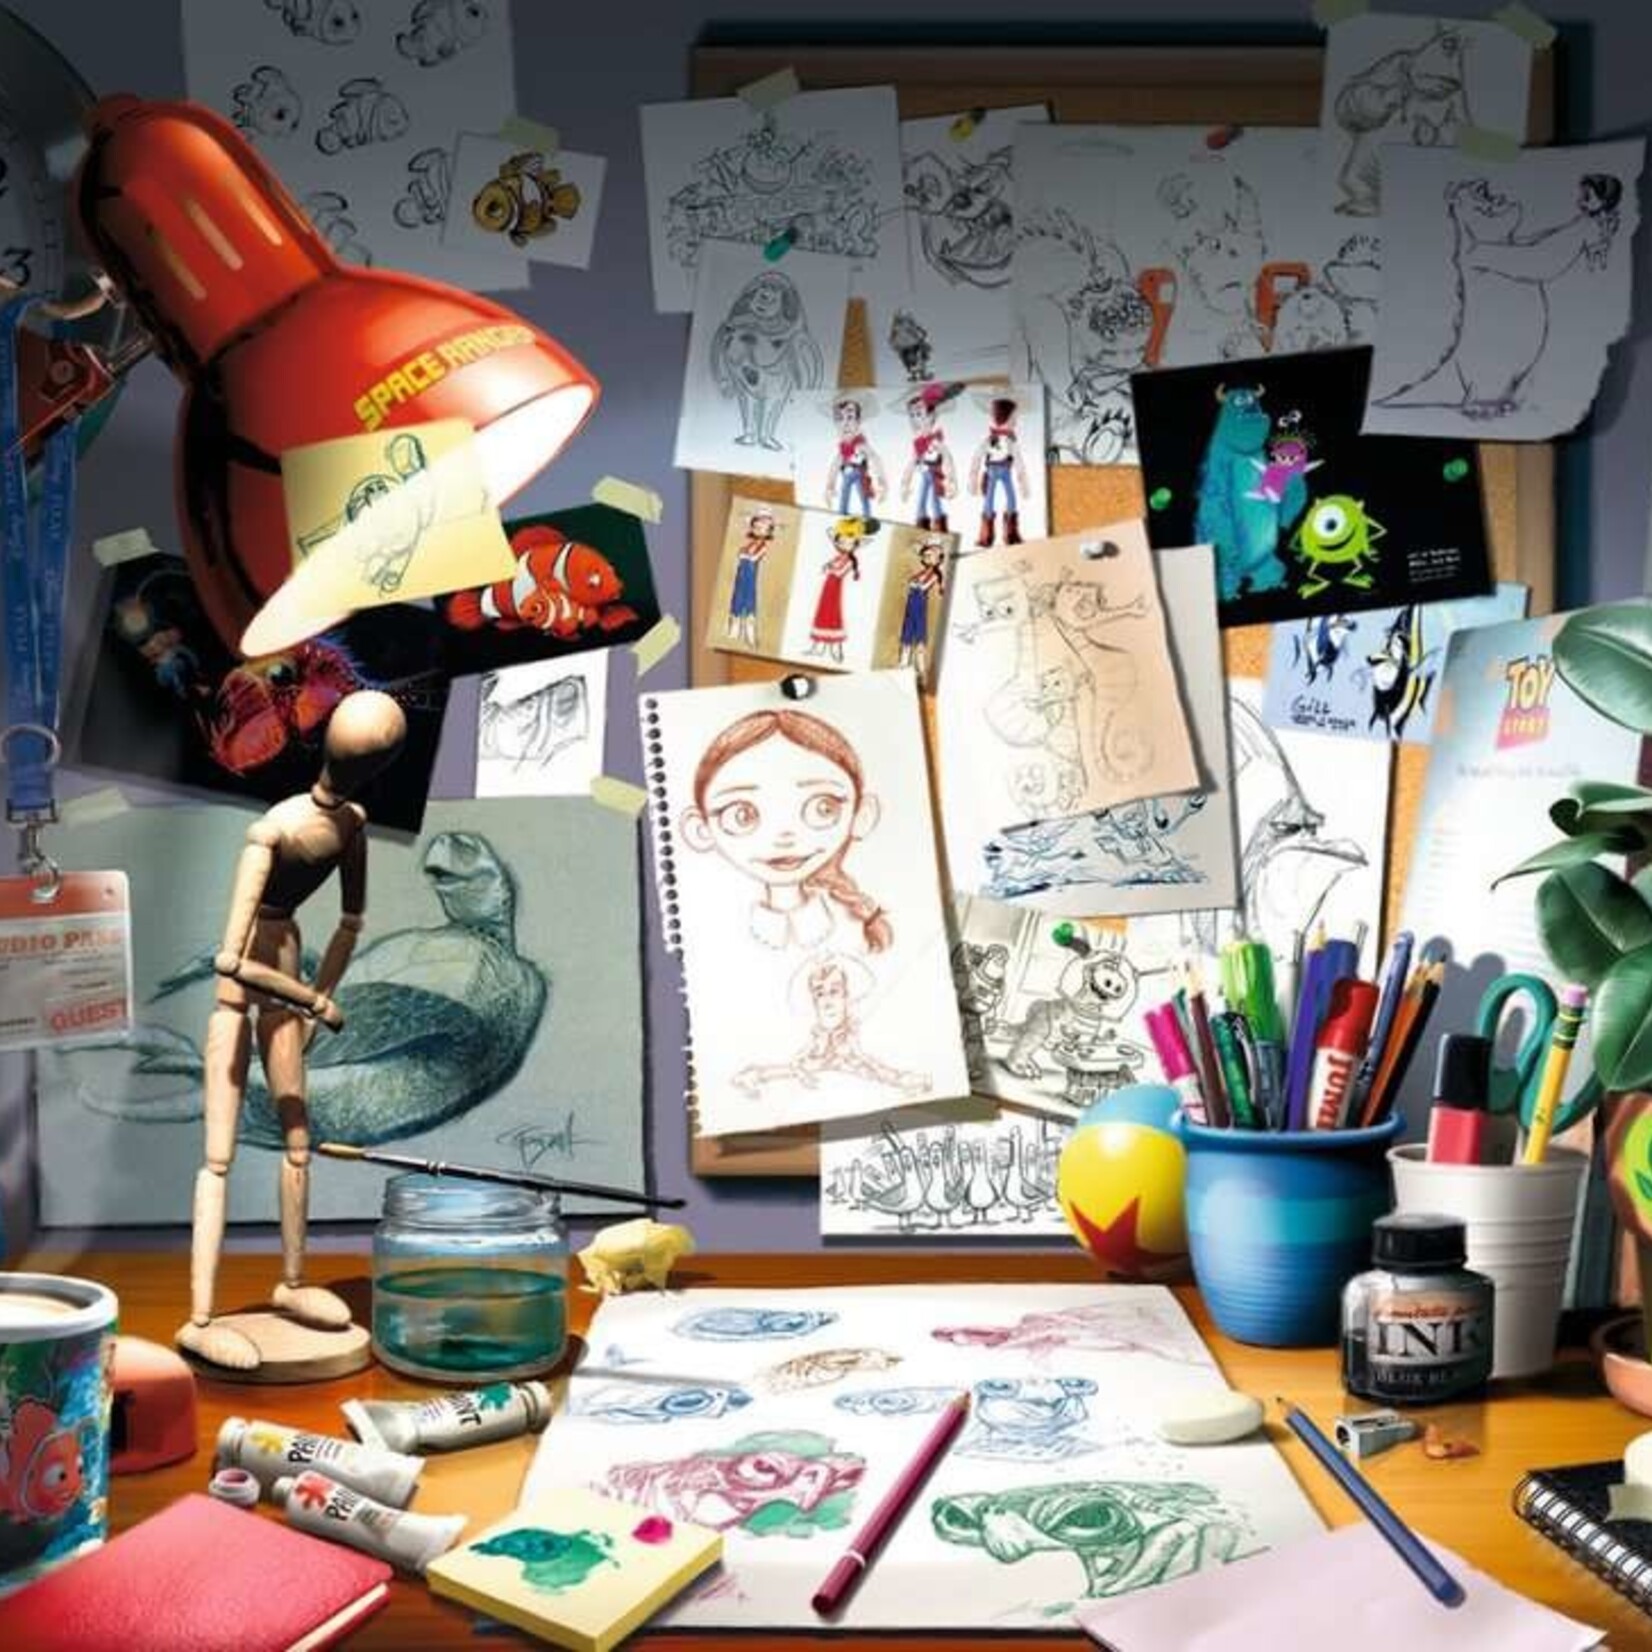 Ravensburger Ravensburger 1000 - Disney Pixar : Atelier d'artiste